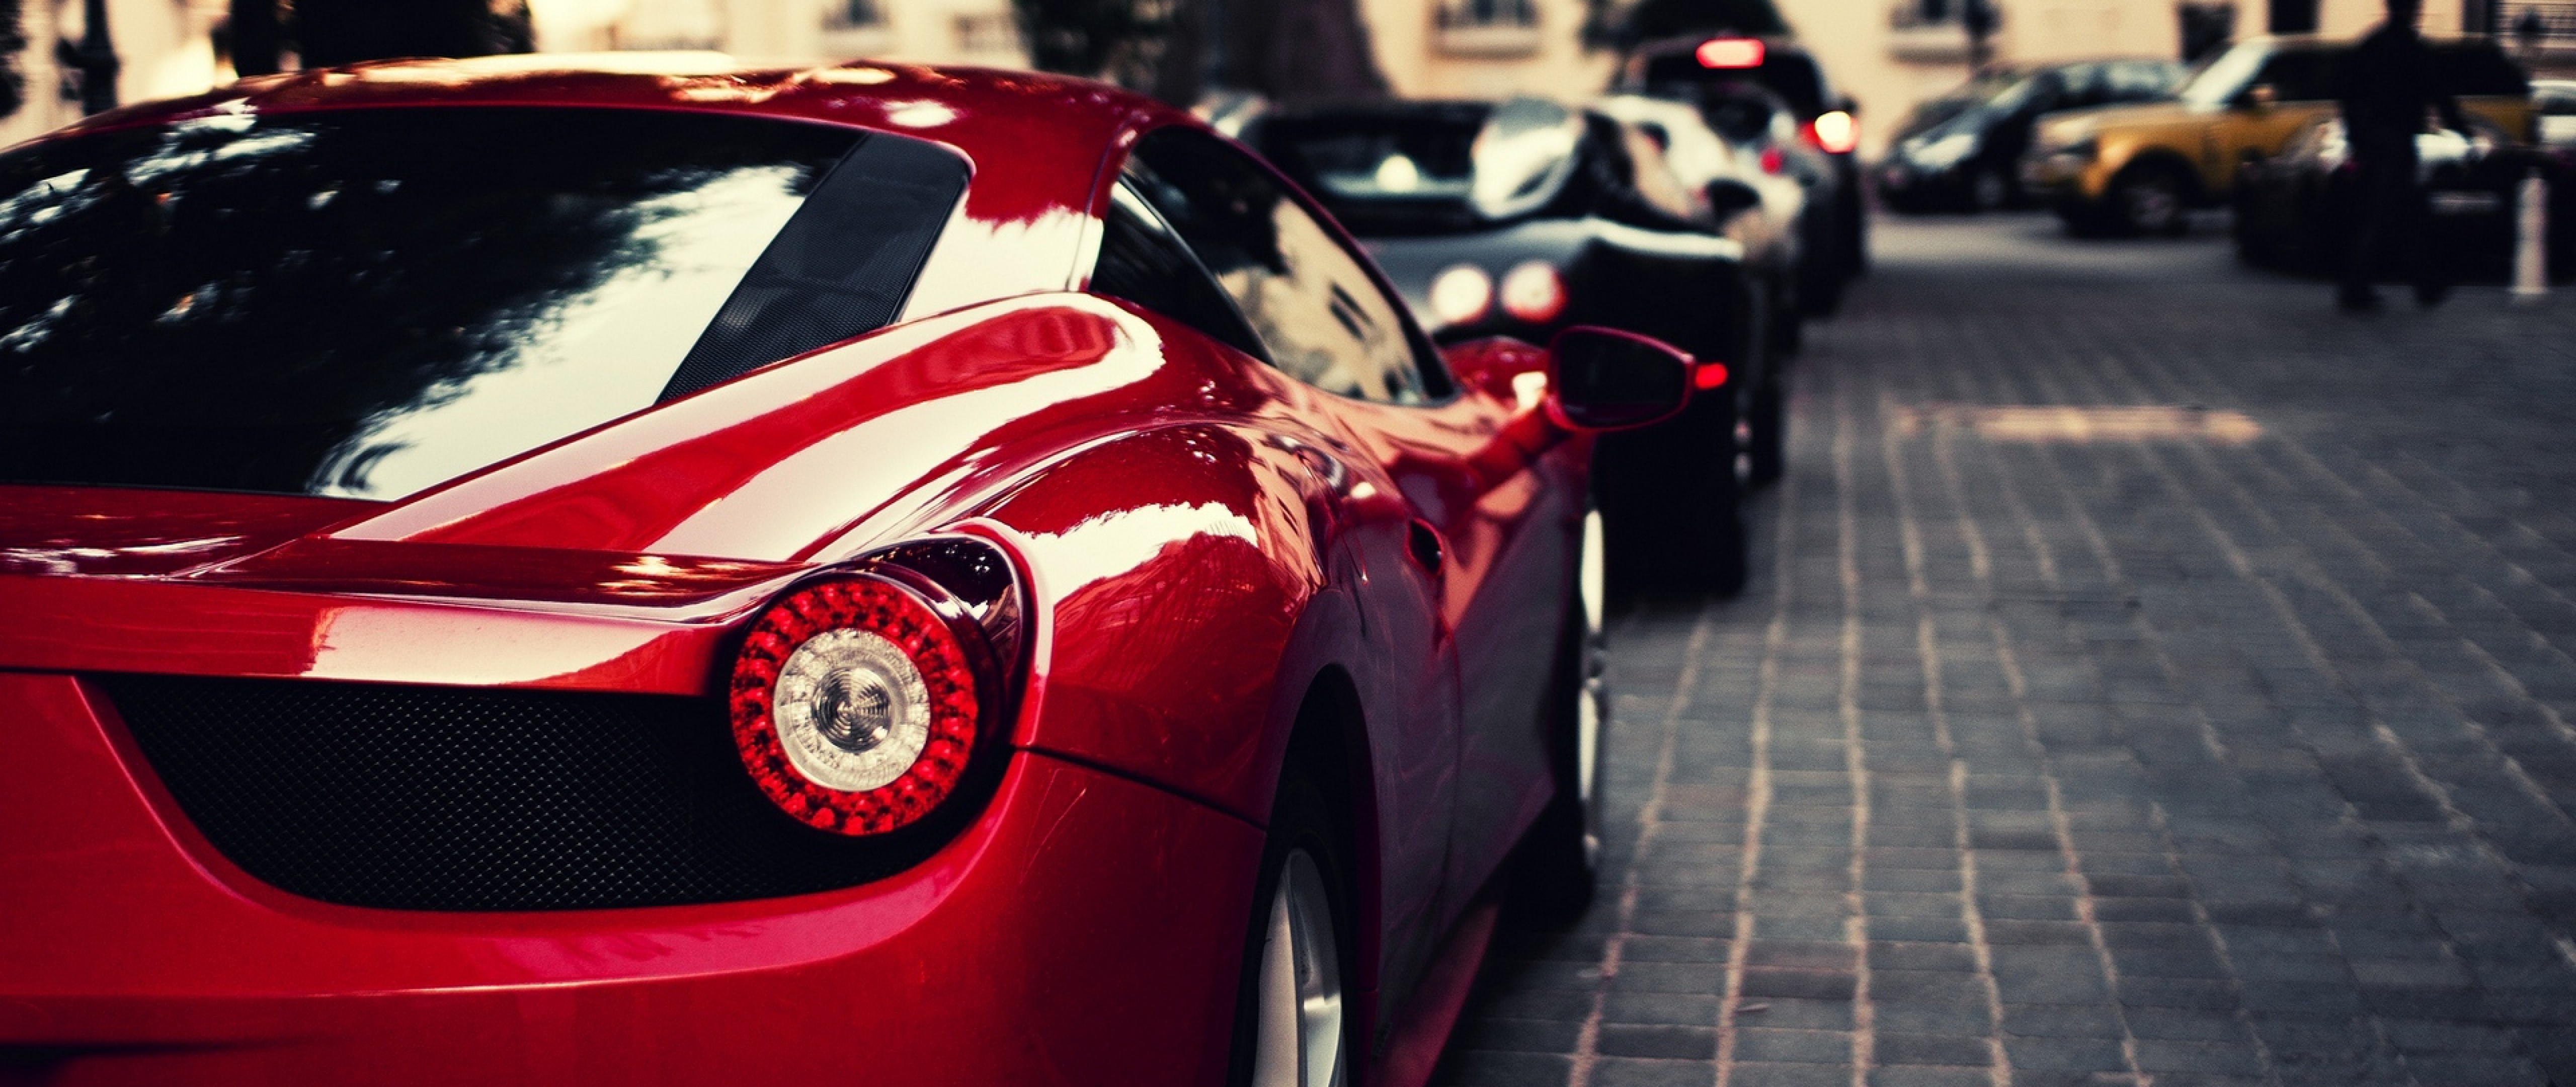 Ferrari and Bugatti parked HD Wallpaper